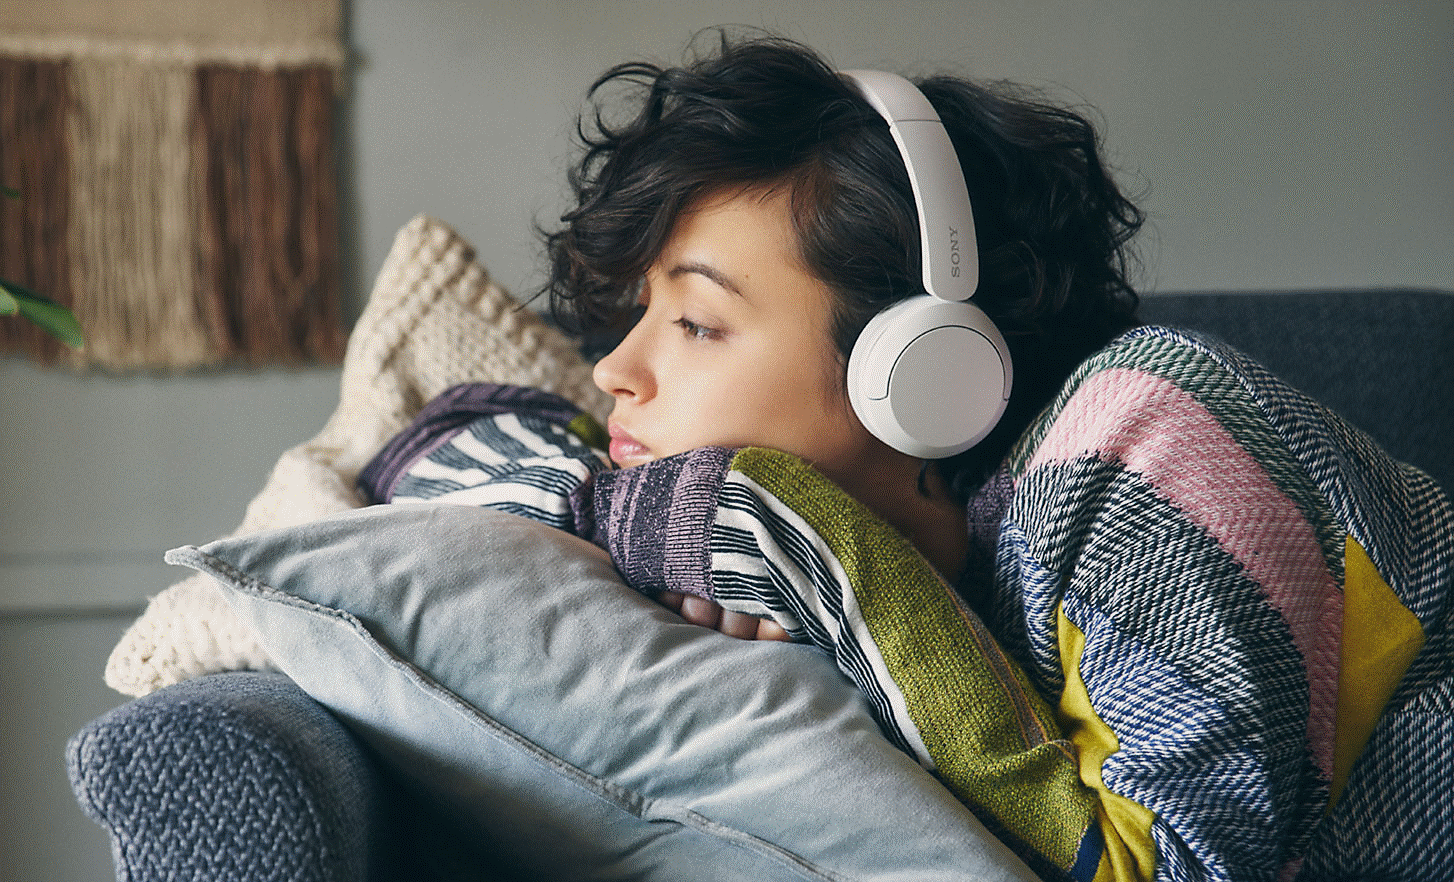 Slika žene koja leži na sivom kauču, nosi bijele slušalice Sony WH-CH520